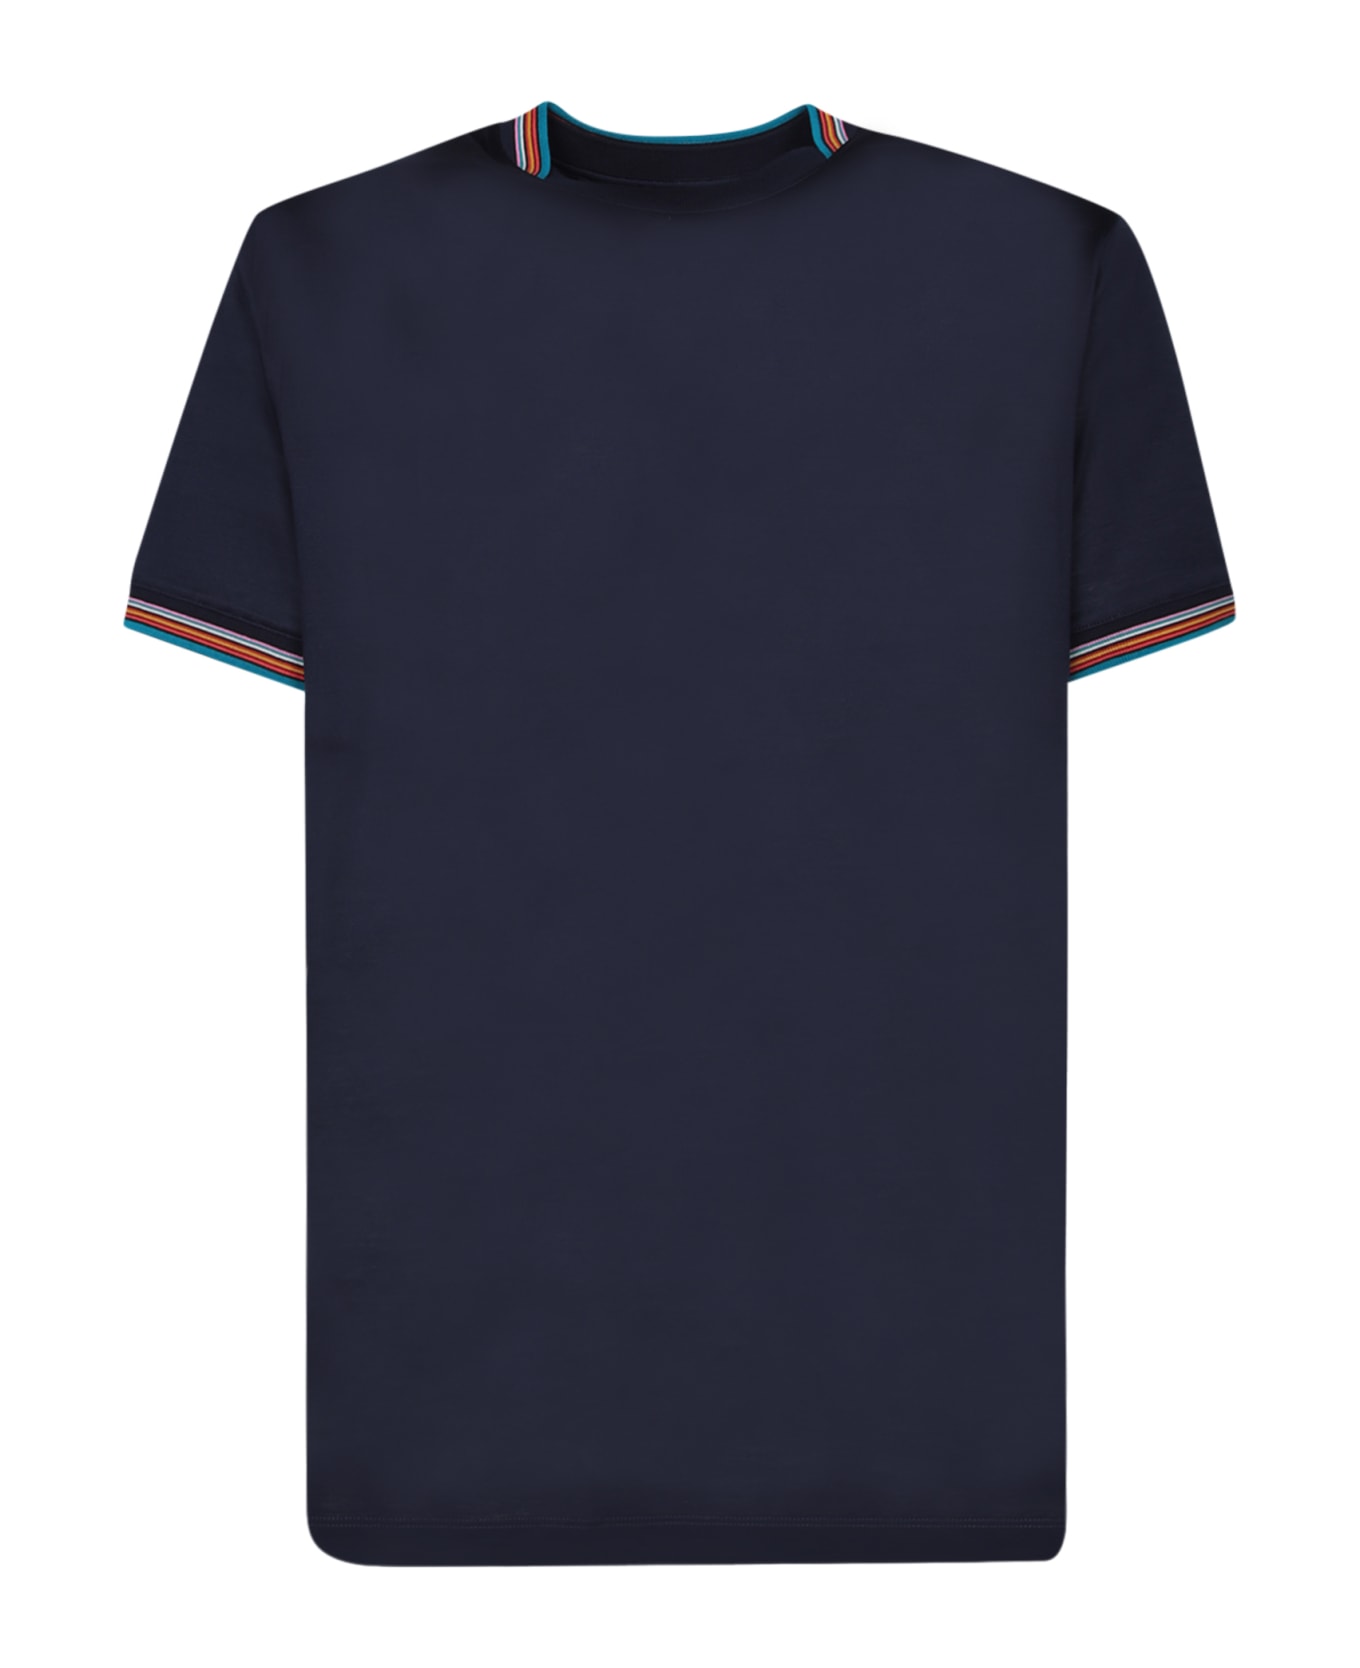 Paul Smith Stripe Detail Cotton T-shirt - Dk na シャツ